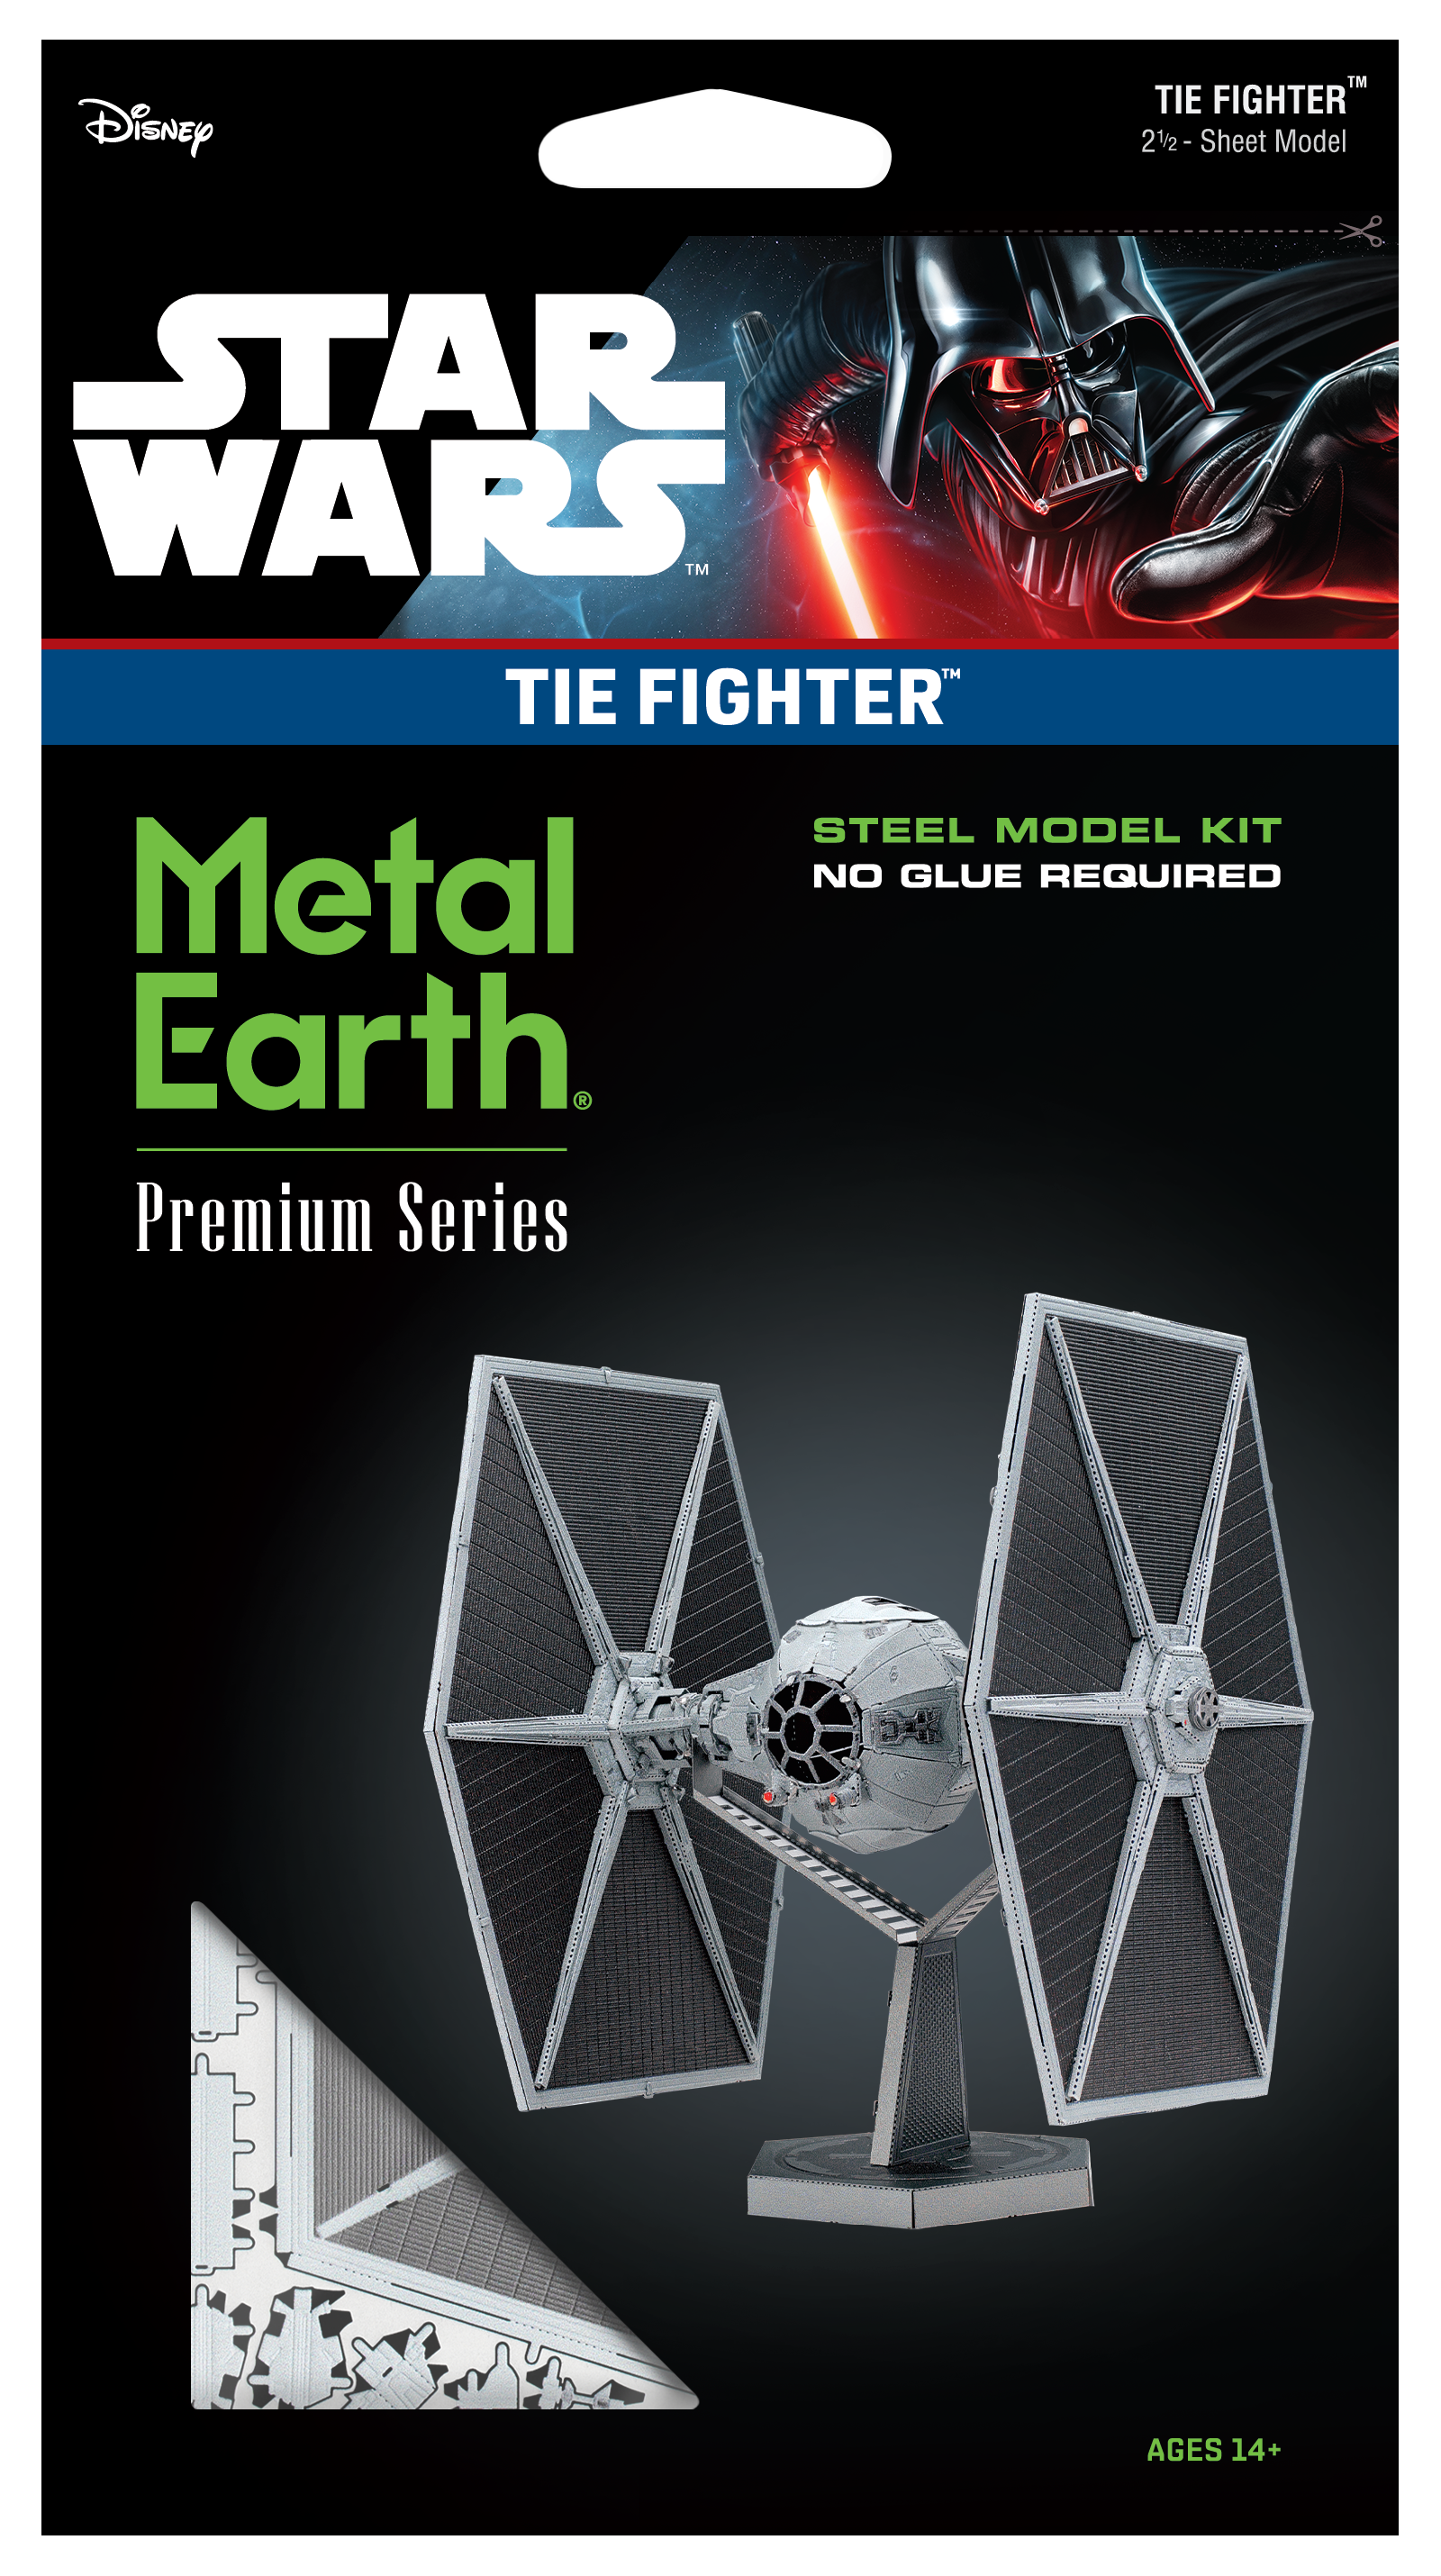 Metal Earth: Premium Series STAR WARS Imperial AT-AT